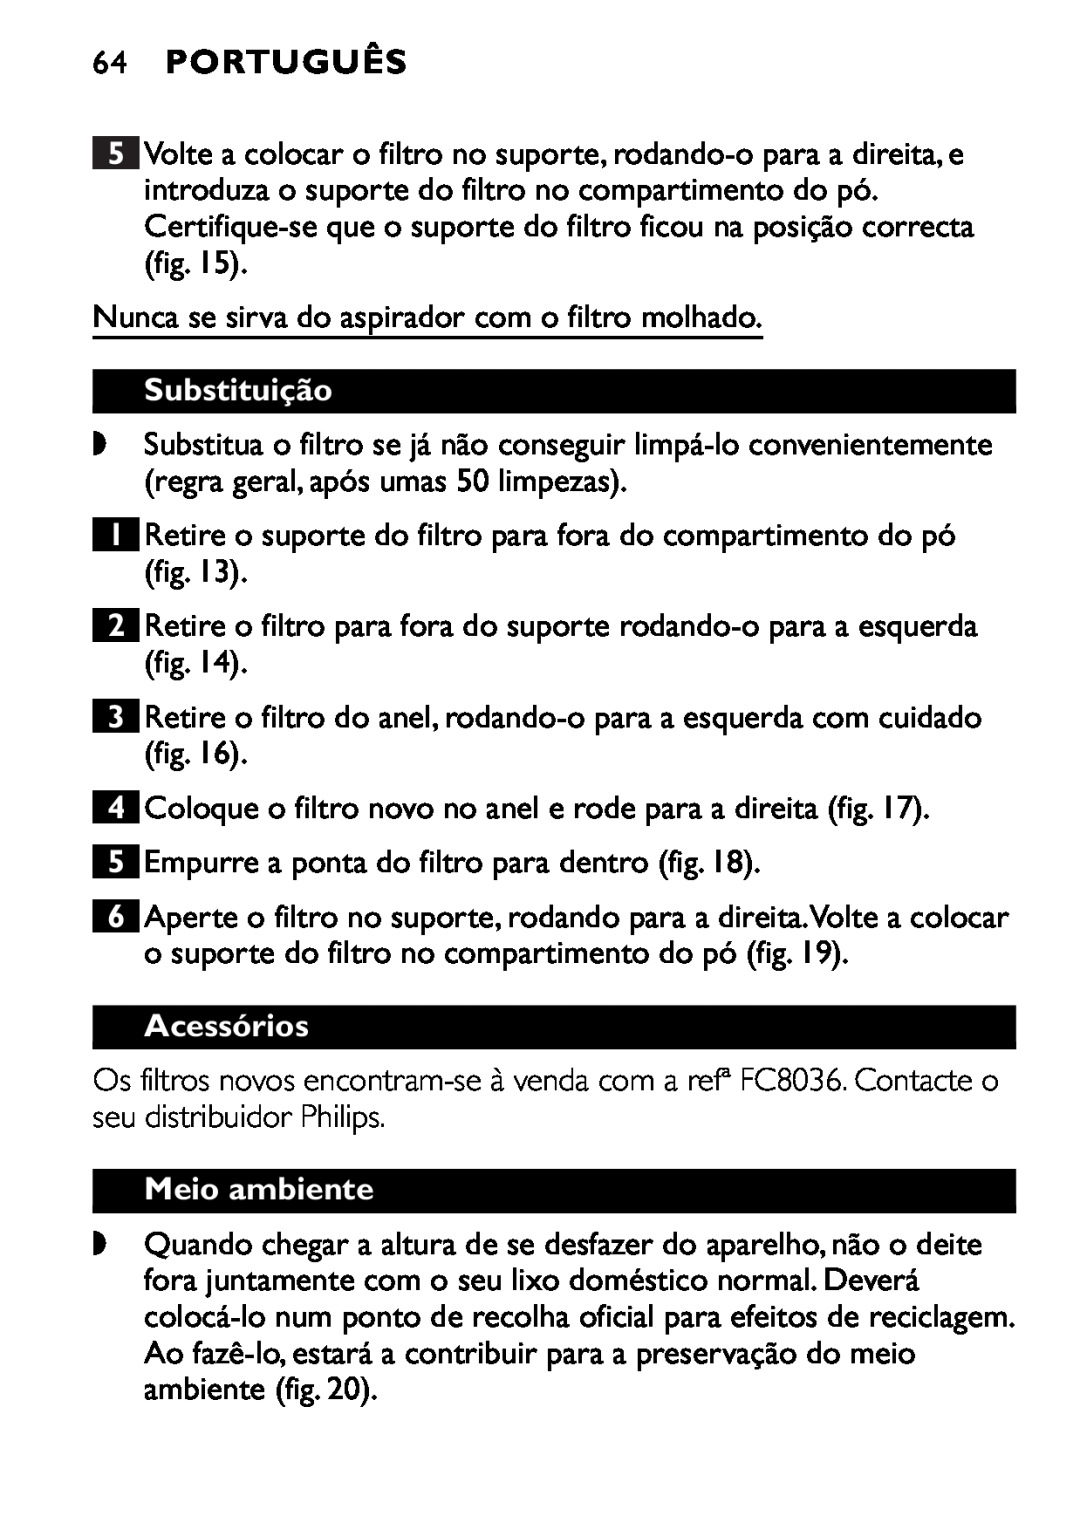 Philips FC6055 manual 64PORTUGUÊS, Substituição, Acessórios, Meio ambiente 